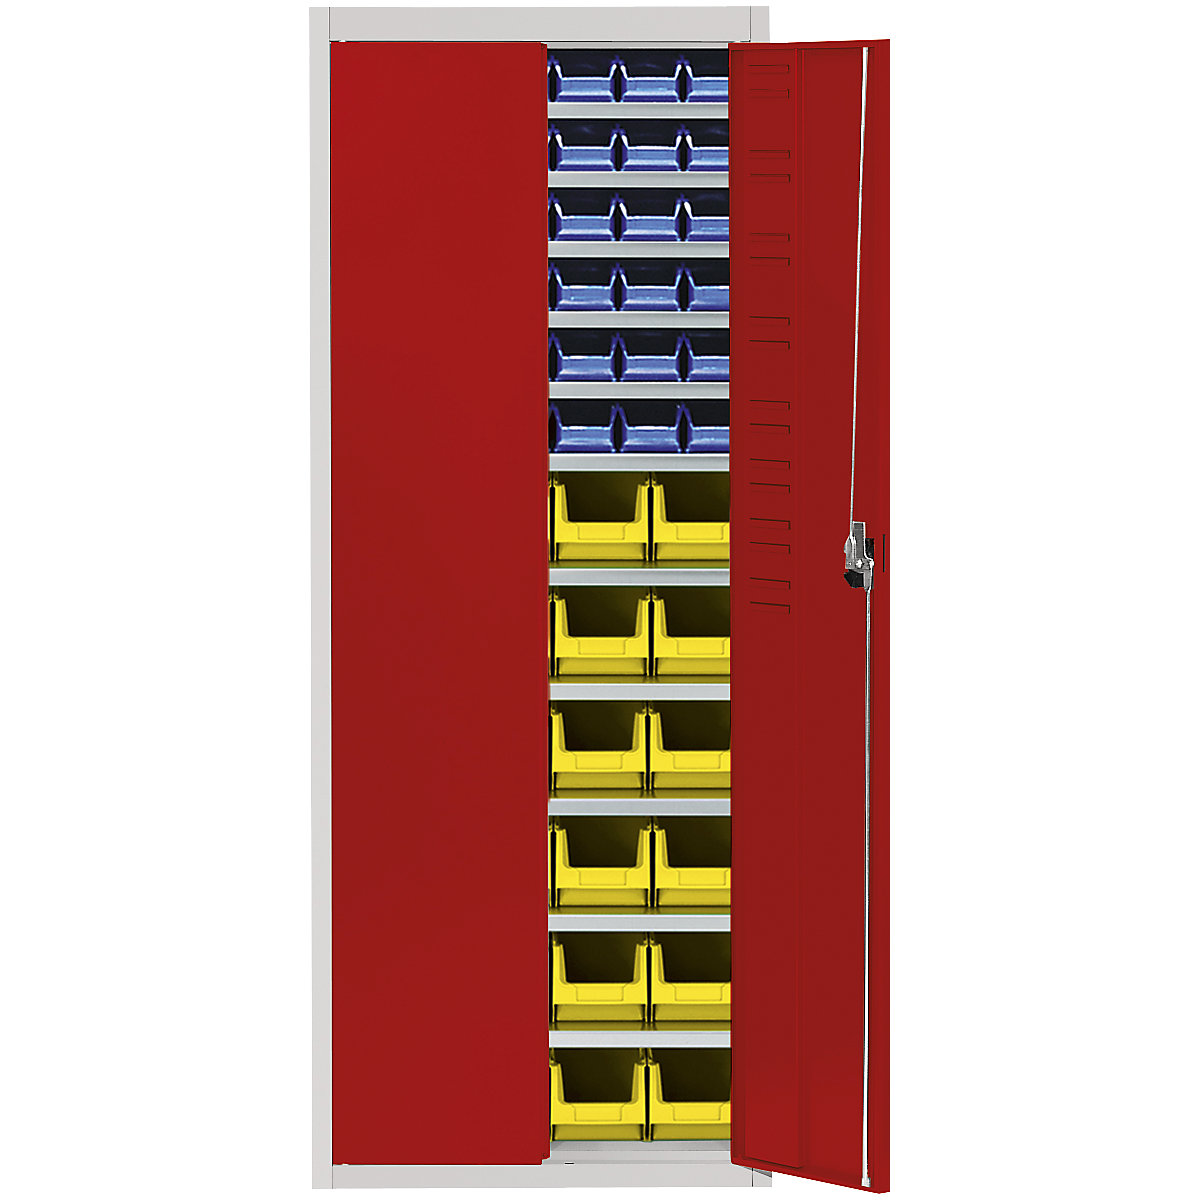 Magazinschrank mit Sichtlagerkästen mauser, HxBxT 1740 x 680 x 280 mm, zweifarbig, Korpus grau, Türen rot, 60 Kästen-16